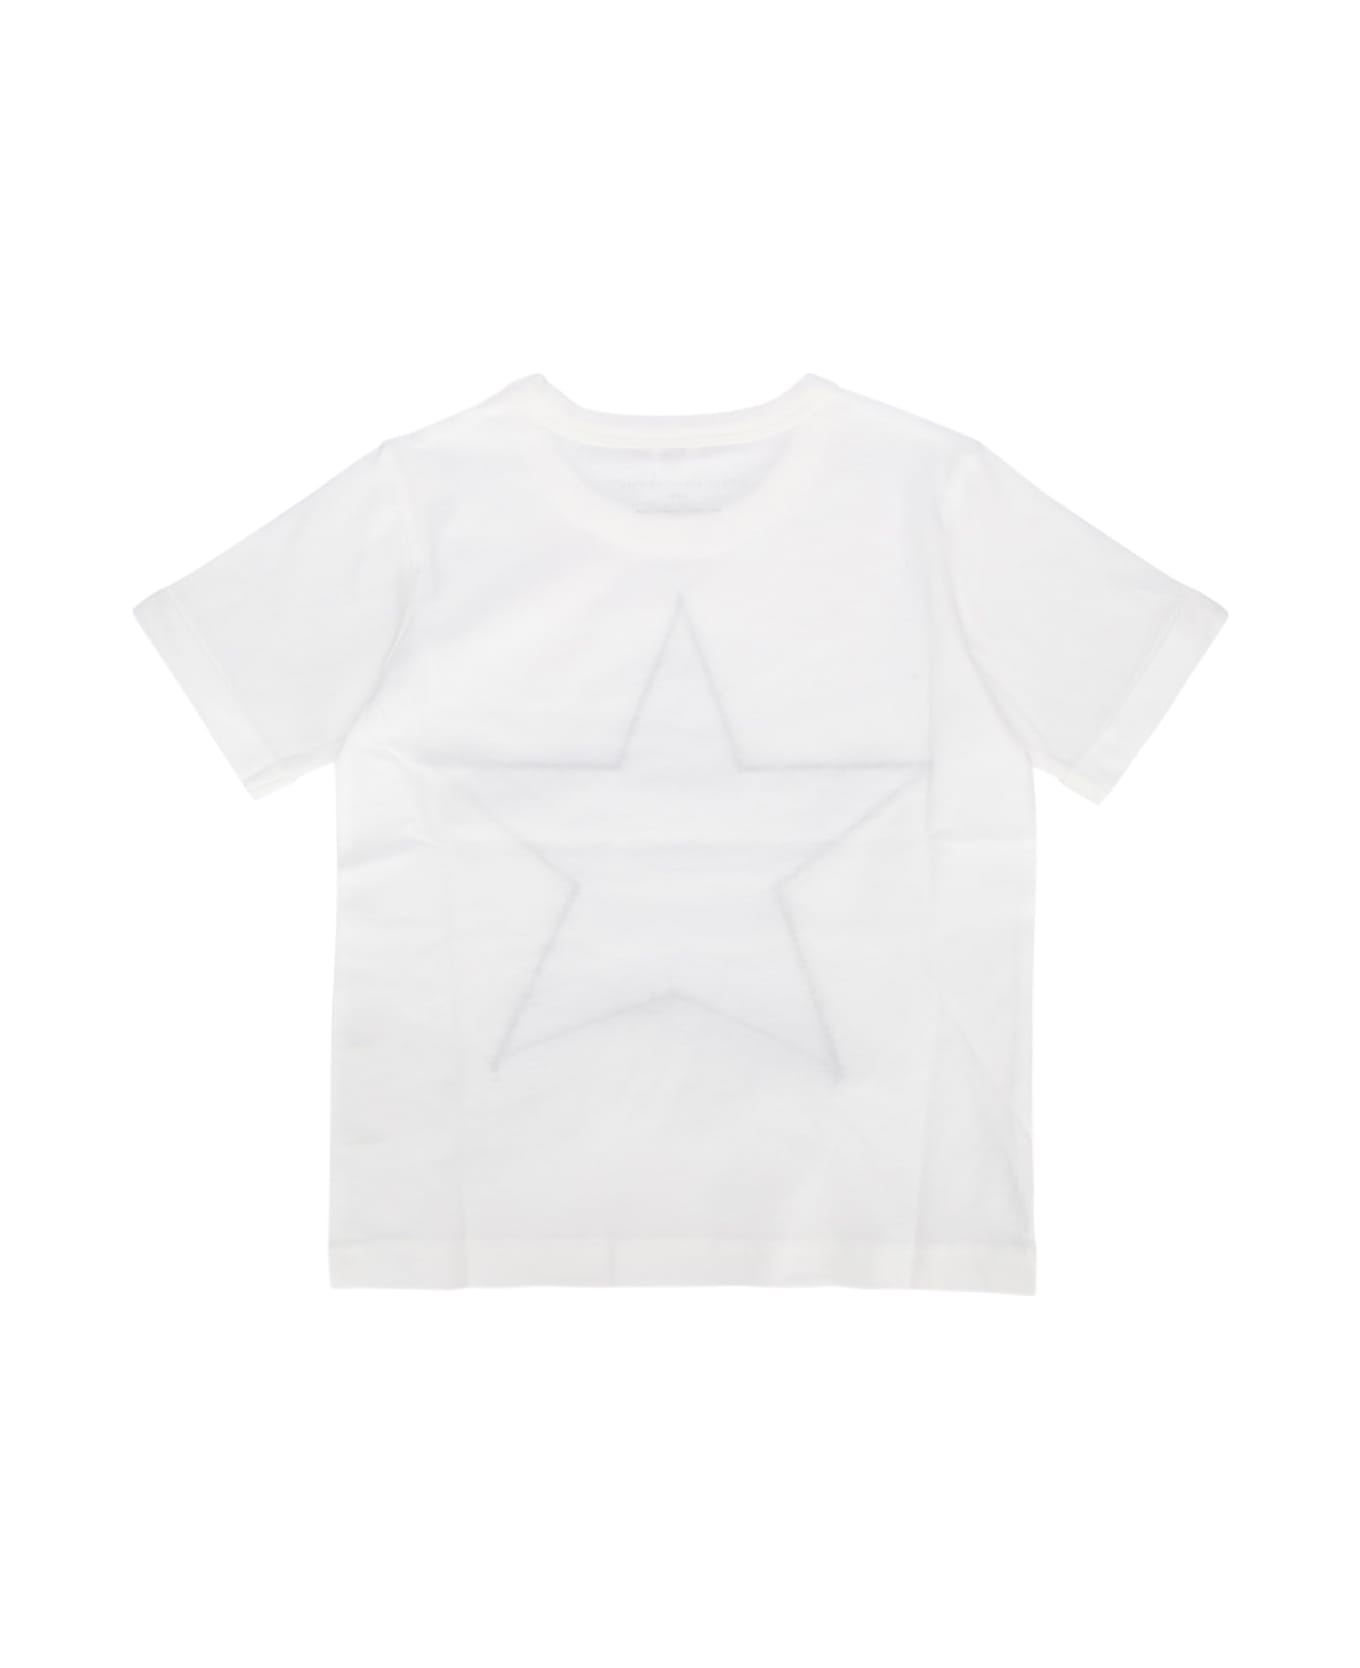 Stella McCartney Kids T-shirt - IVORY